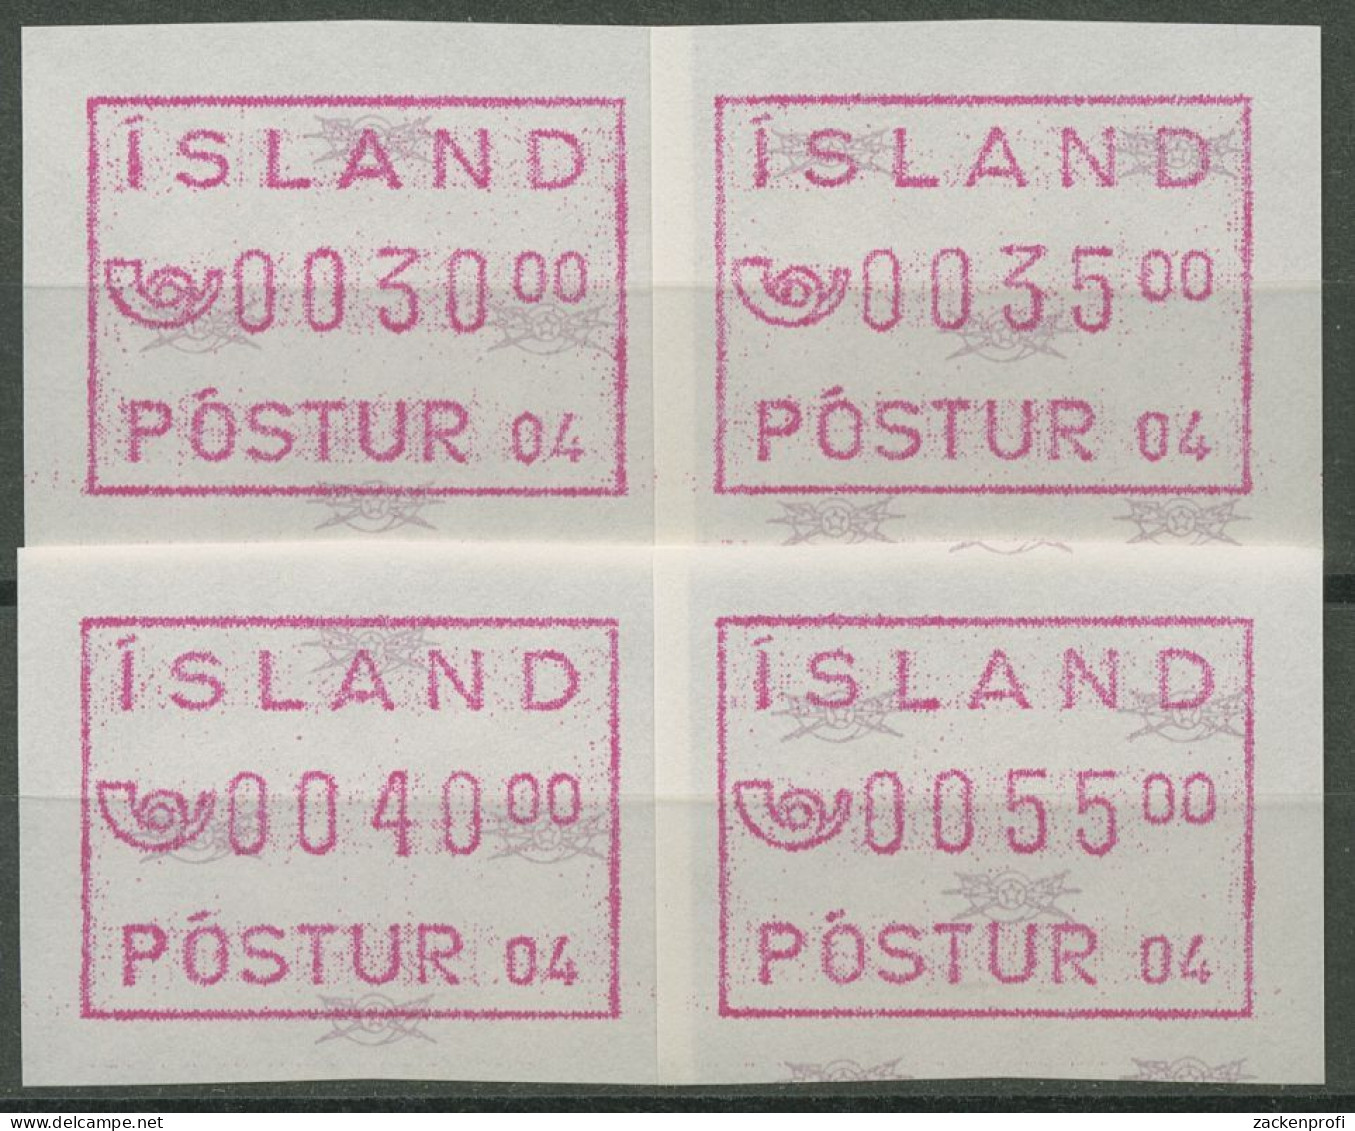 Island ATM 1993 Freimarke Automat 04, Satz 4 Werte, ATM 2.2 S2 Postfrisch - Automatenmarken (Frama)